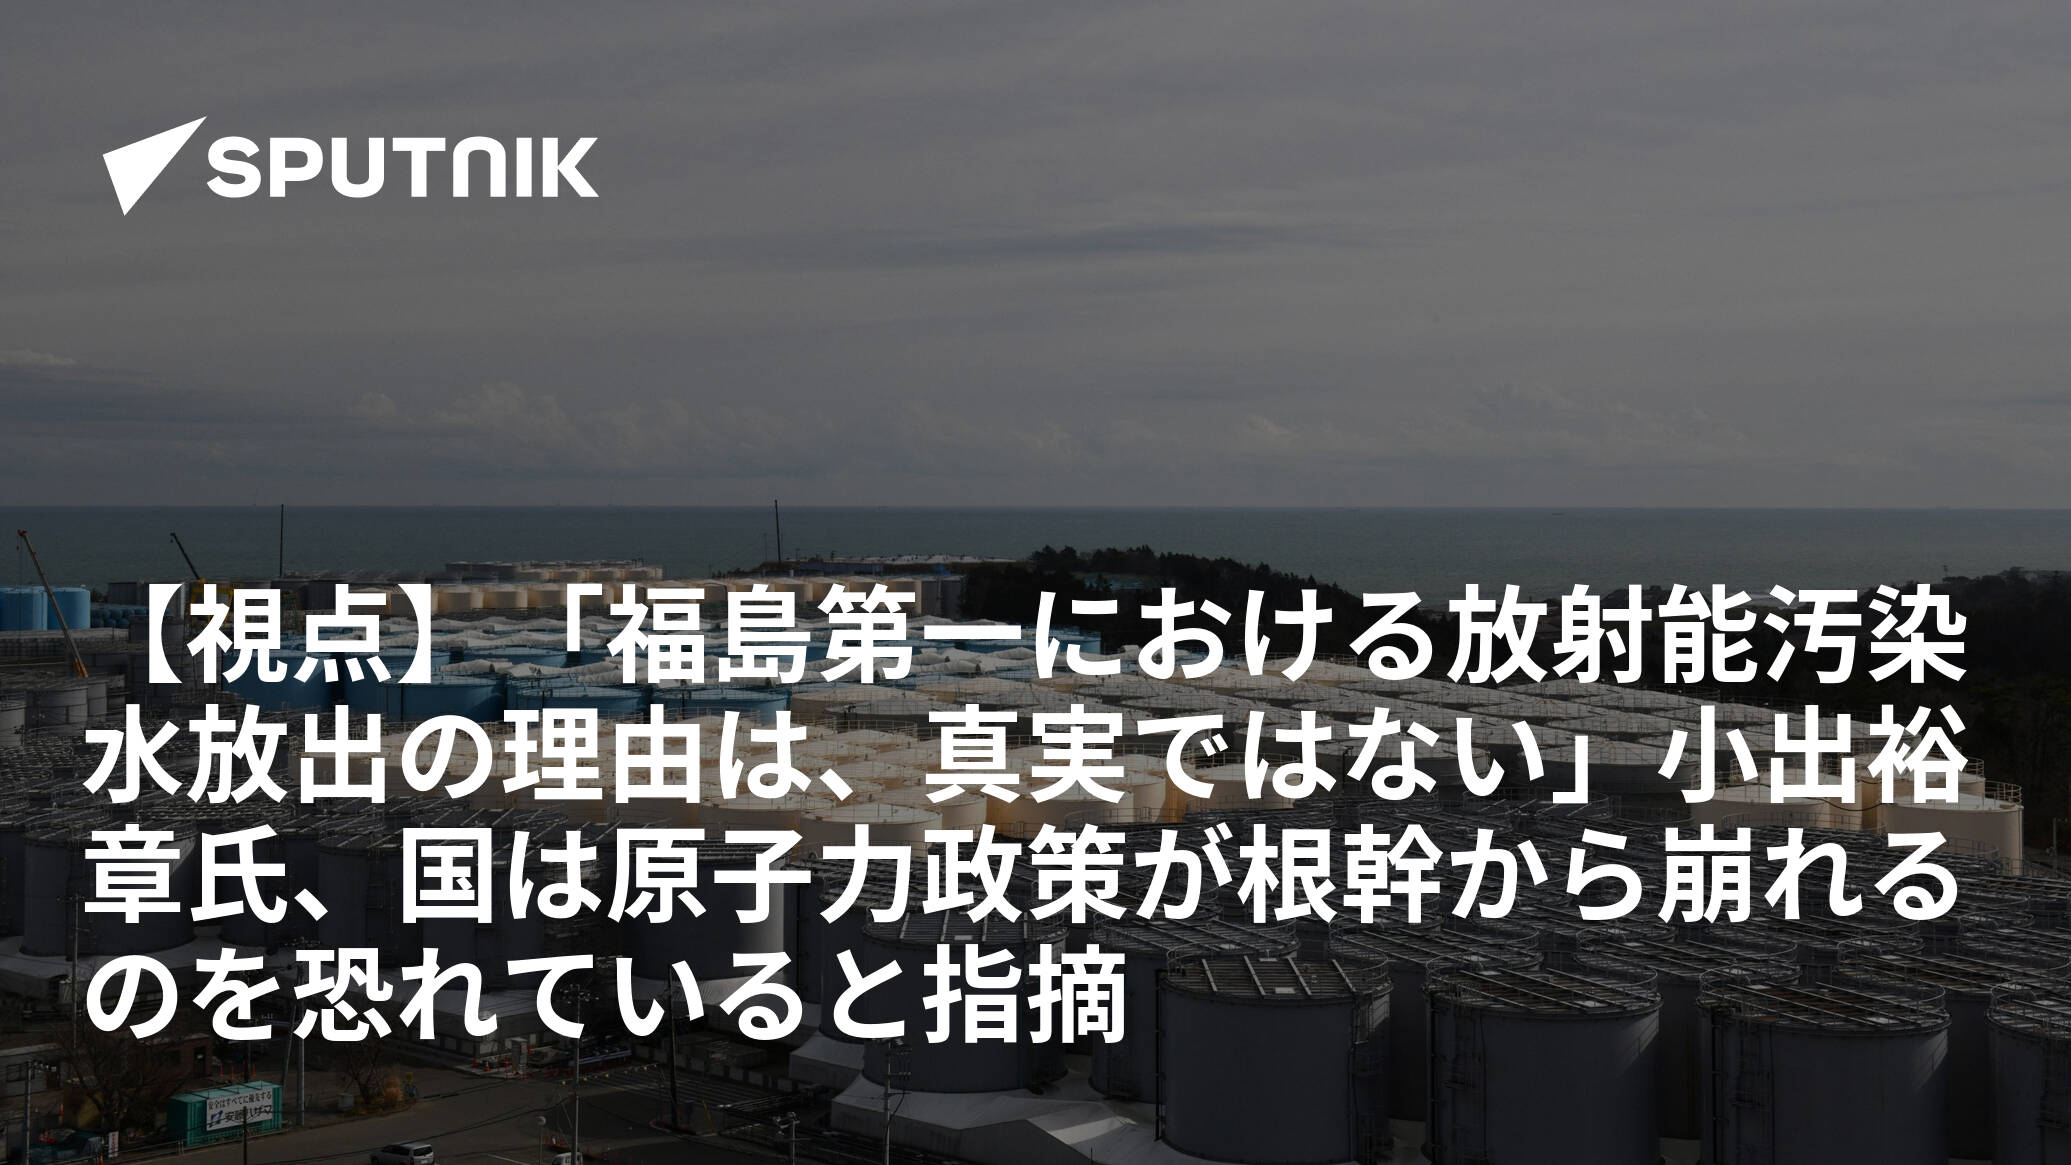 【視点】「福島第一における放射能汚染水放出の理由は、真実ではない」小出裕章氏、国は原子力政策が根幹から崩れるのを恐れていると指摘